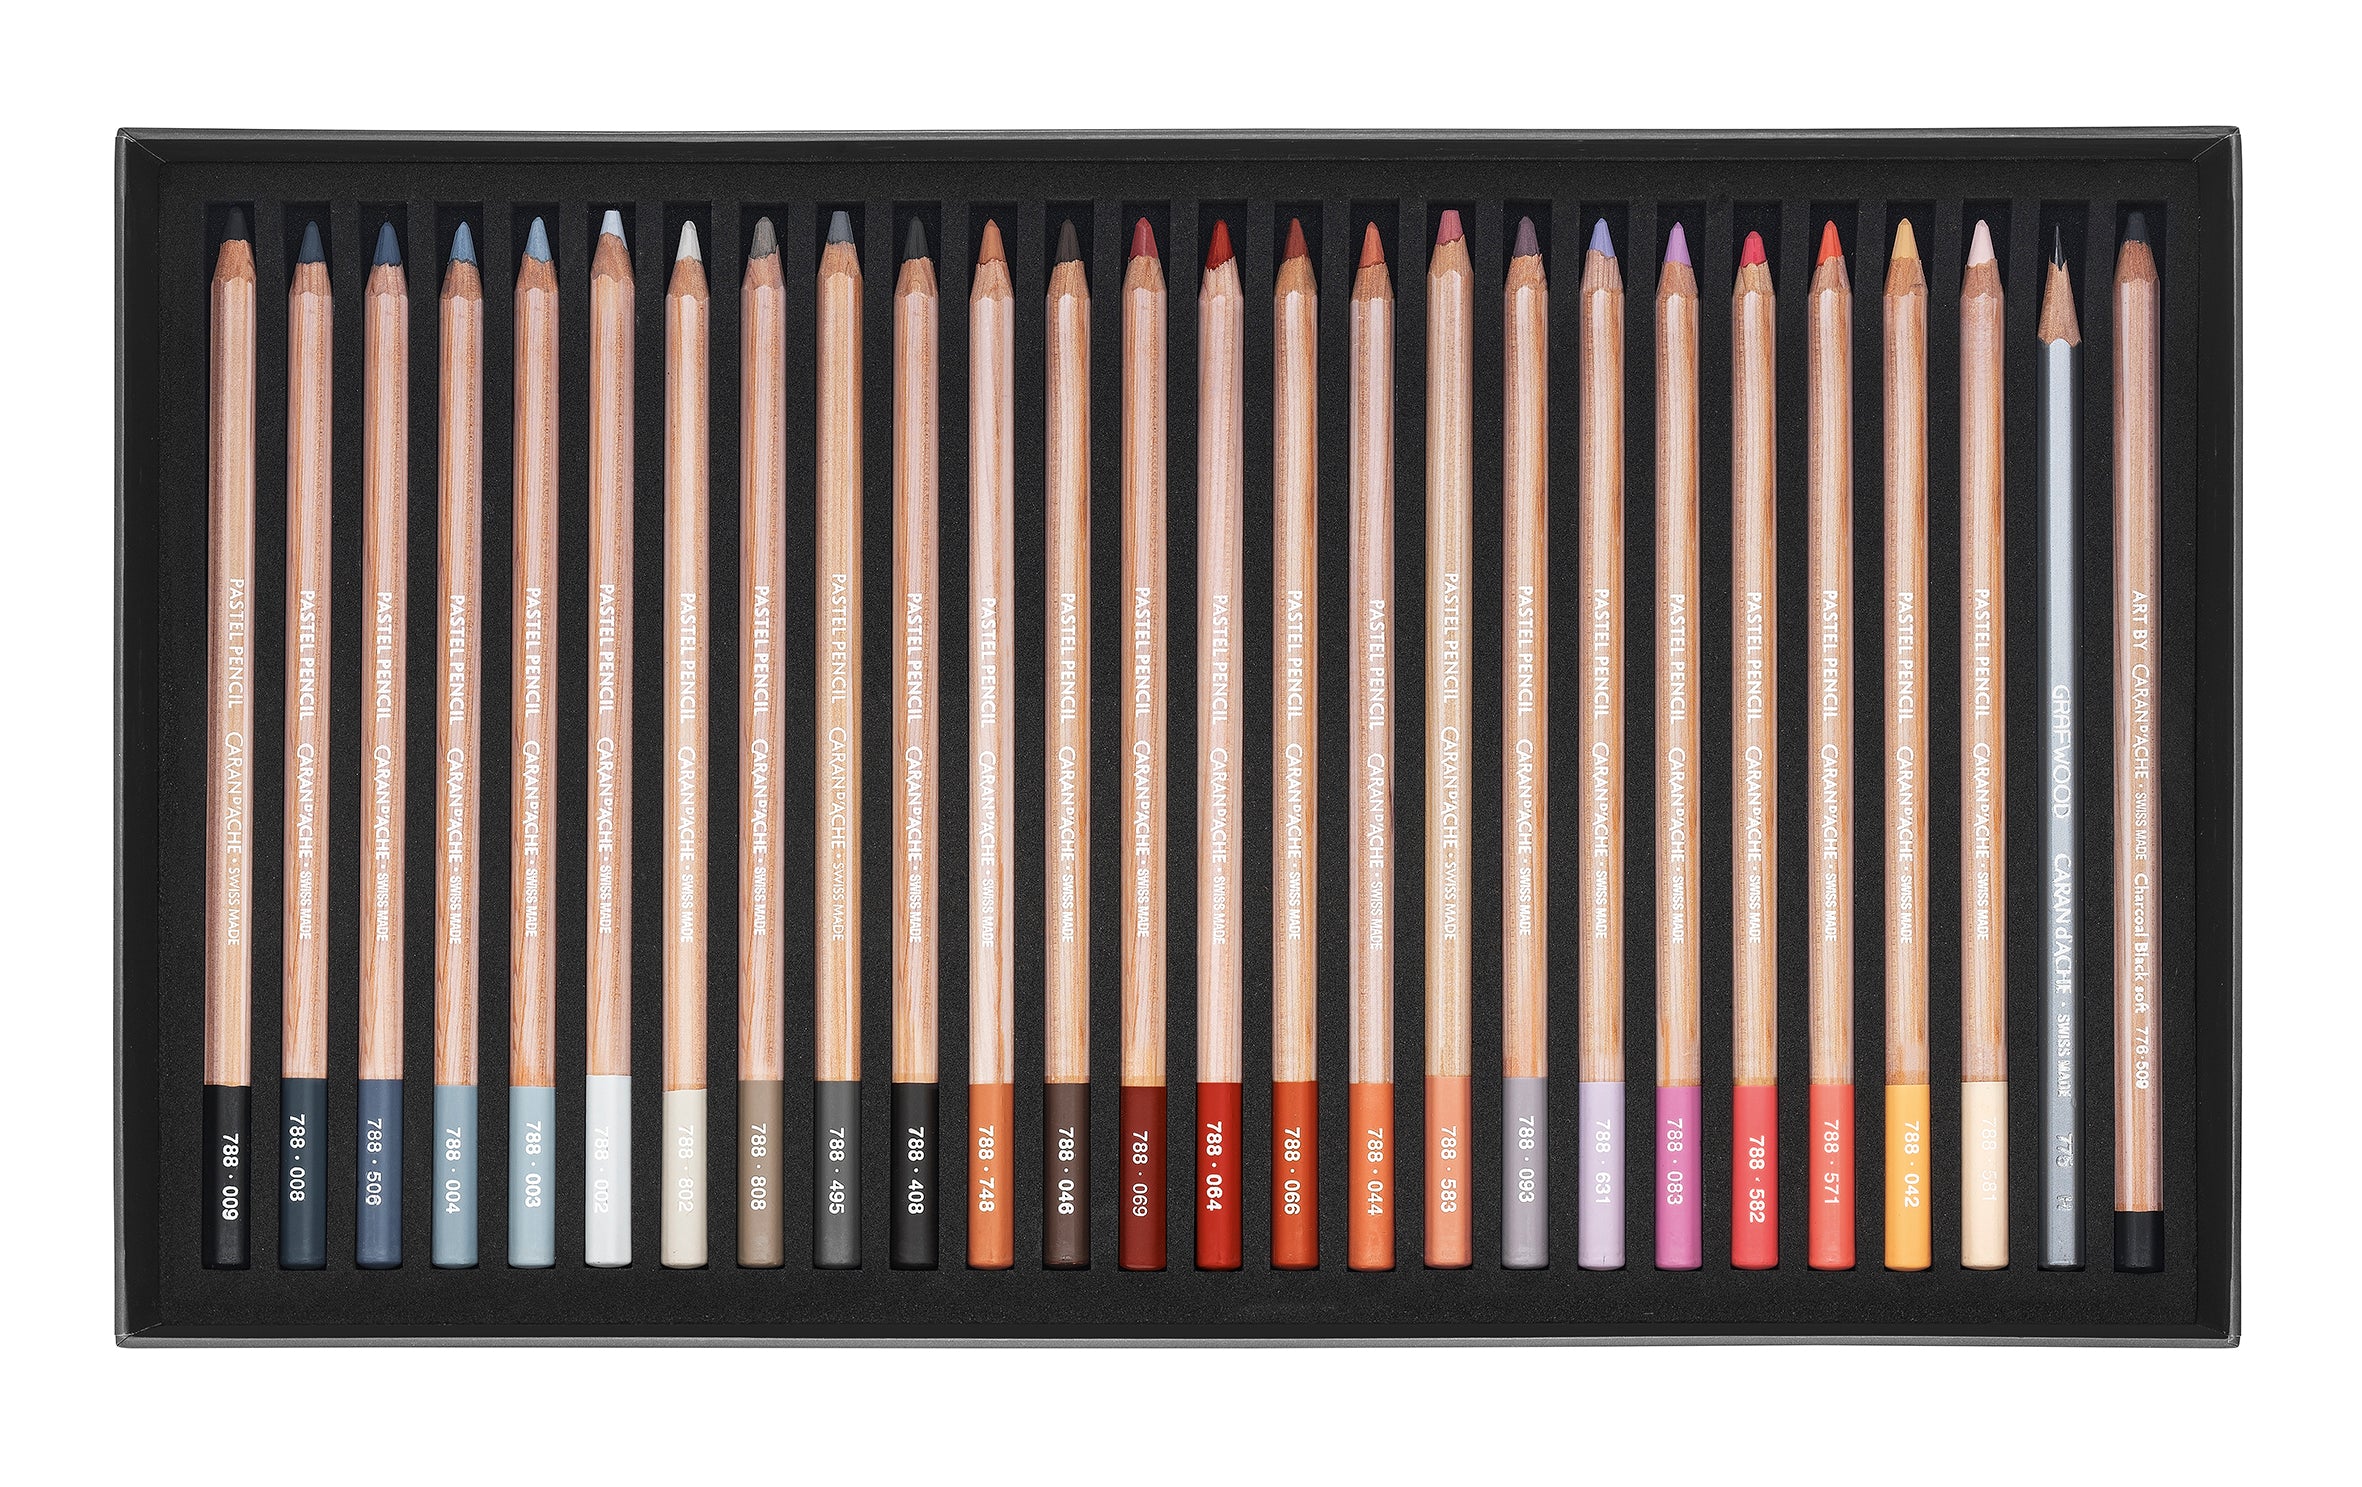 Caran d'Ache Artist Pastel Pencil set of 76 pencils